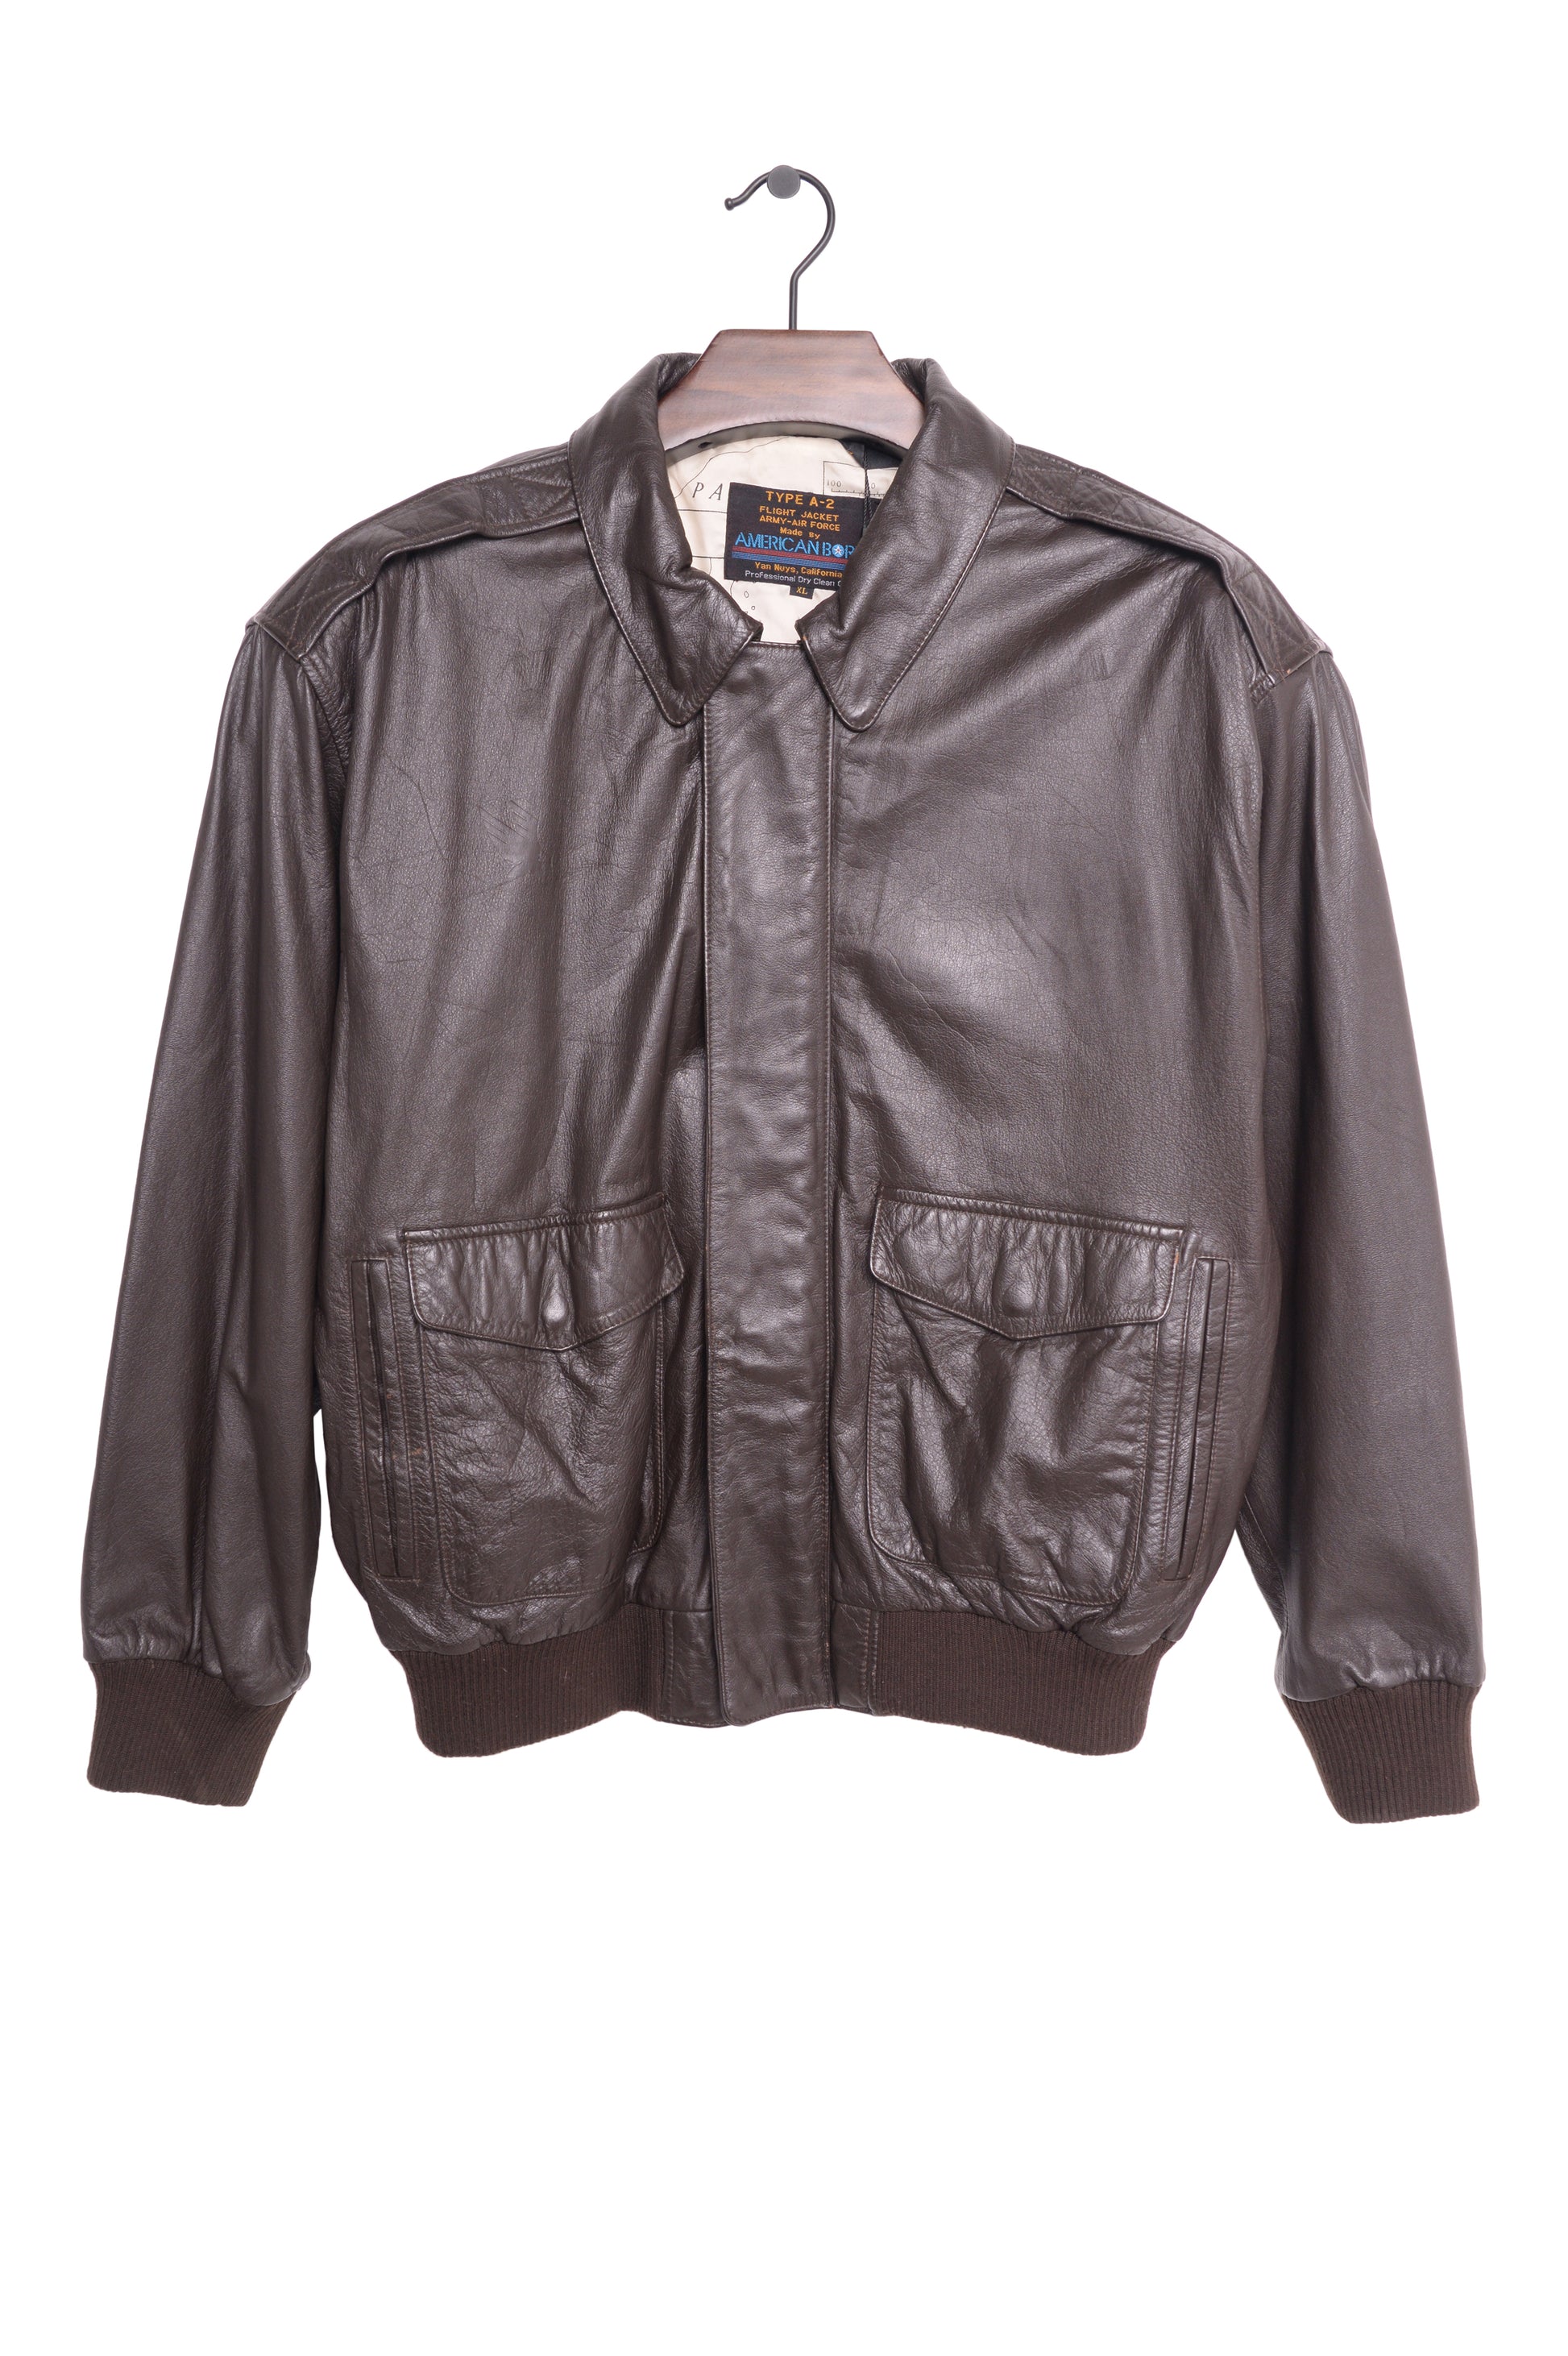 Vintage 1980's MEMBERS ONLY Brown Zippered Jacket Original